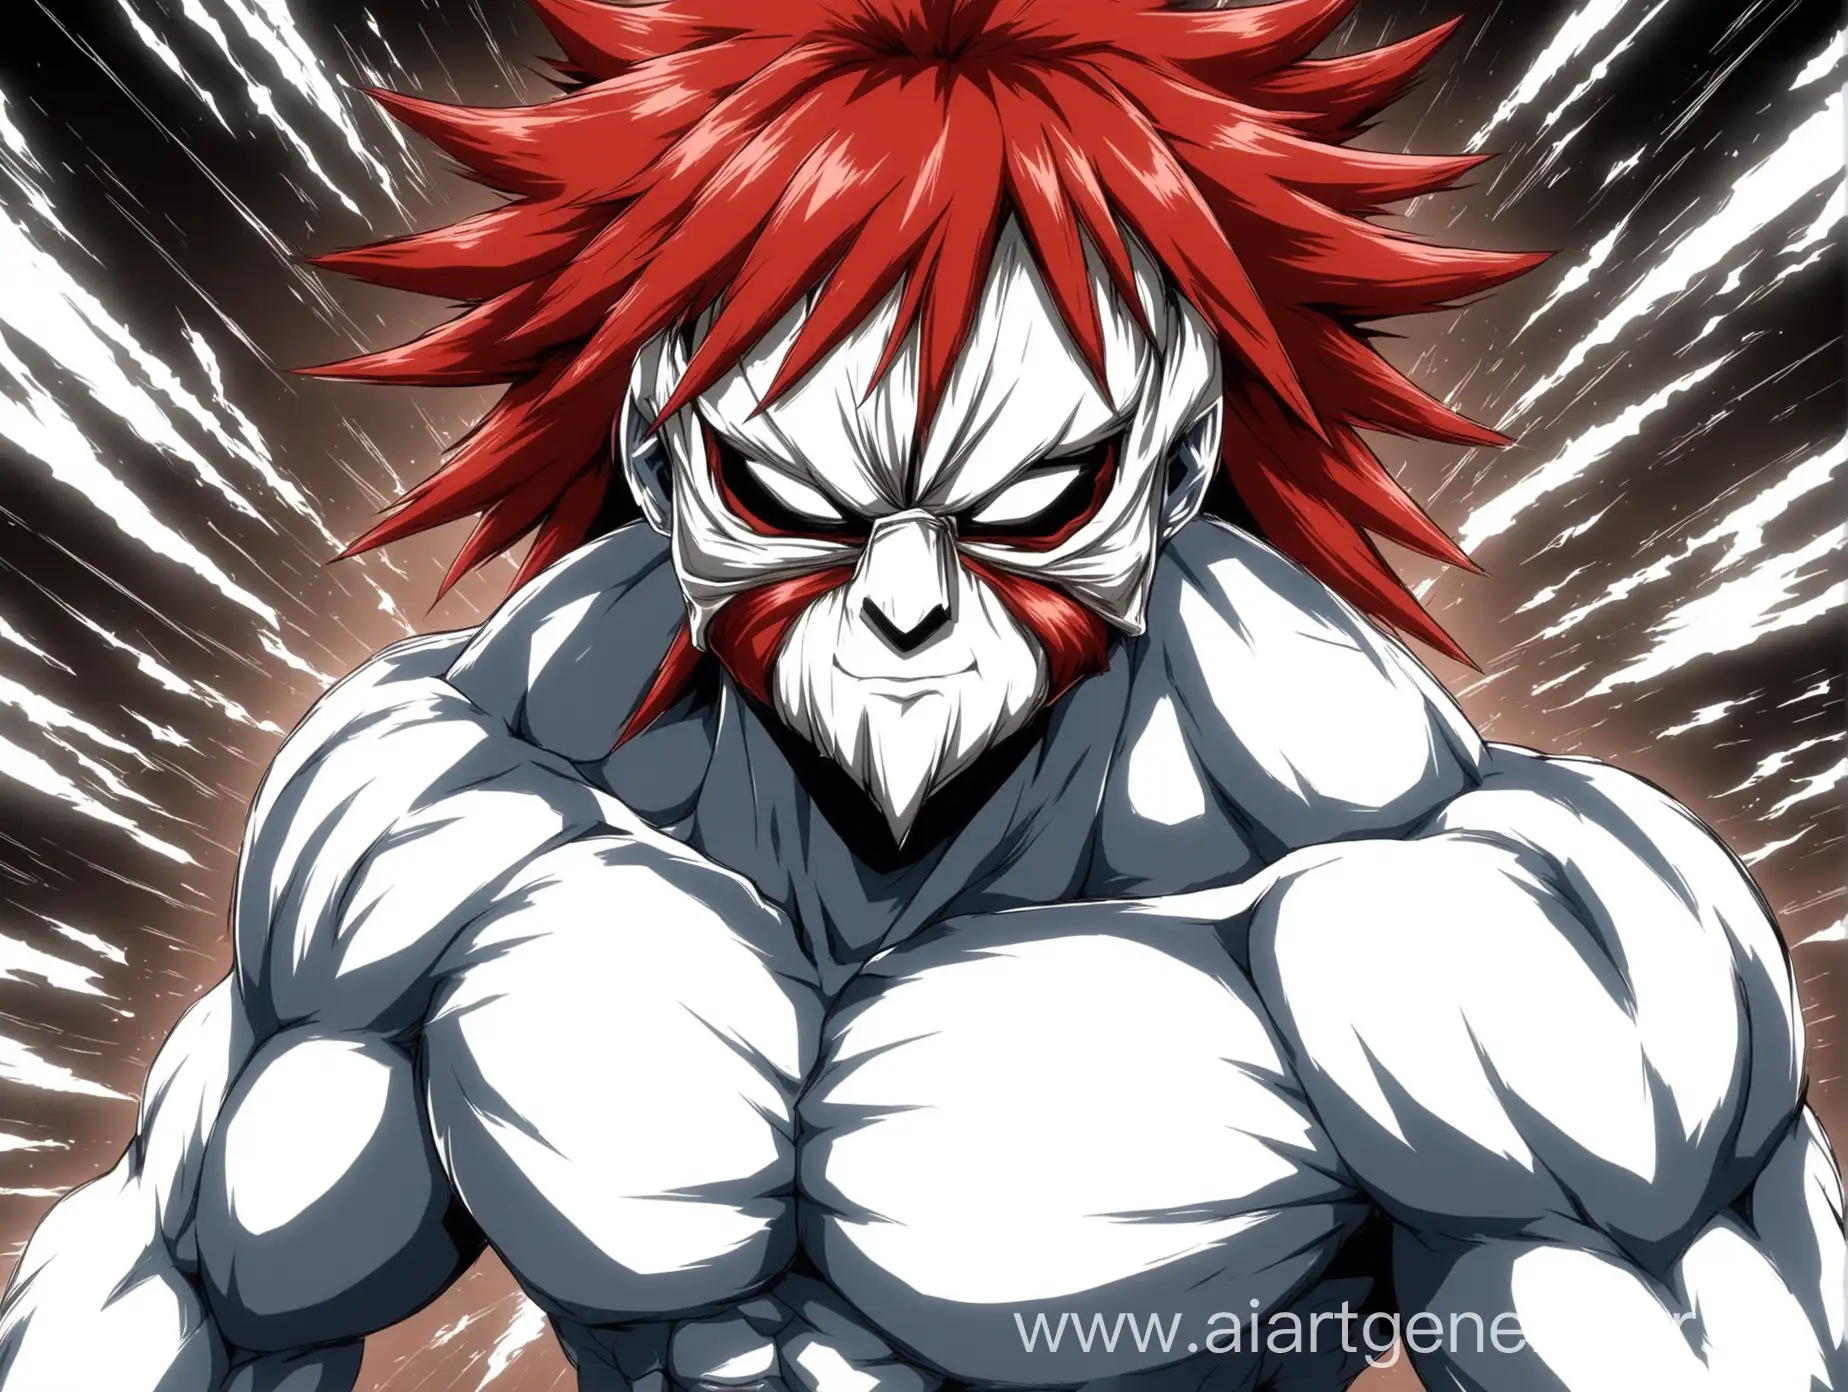 Аниме персонаж, гипердетализация, агрессивный, накаченный, в белой маске, красные волосы